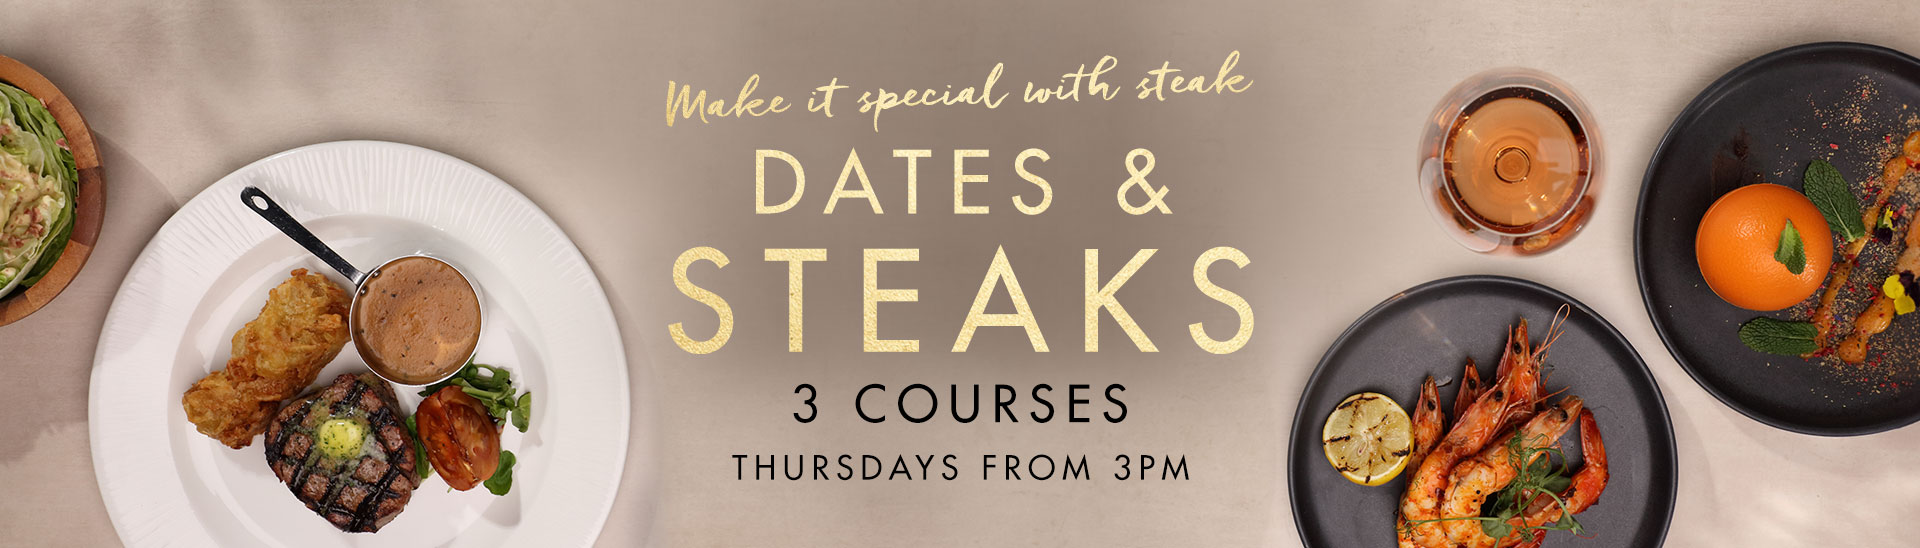 Dates & Steaks